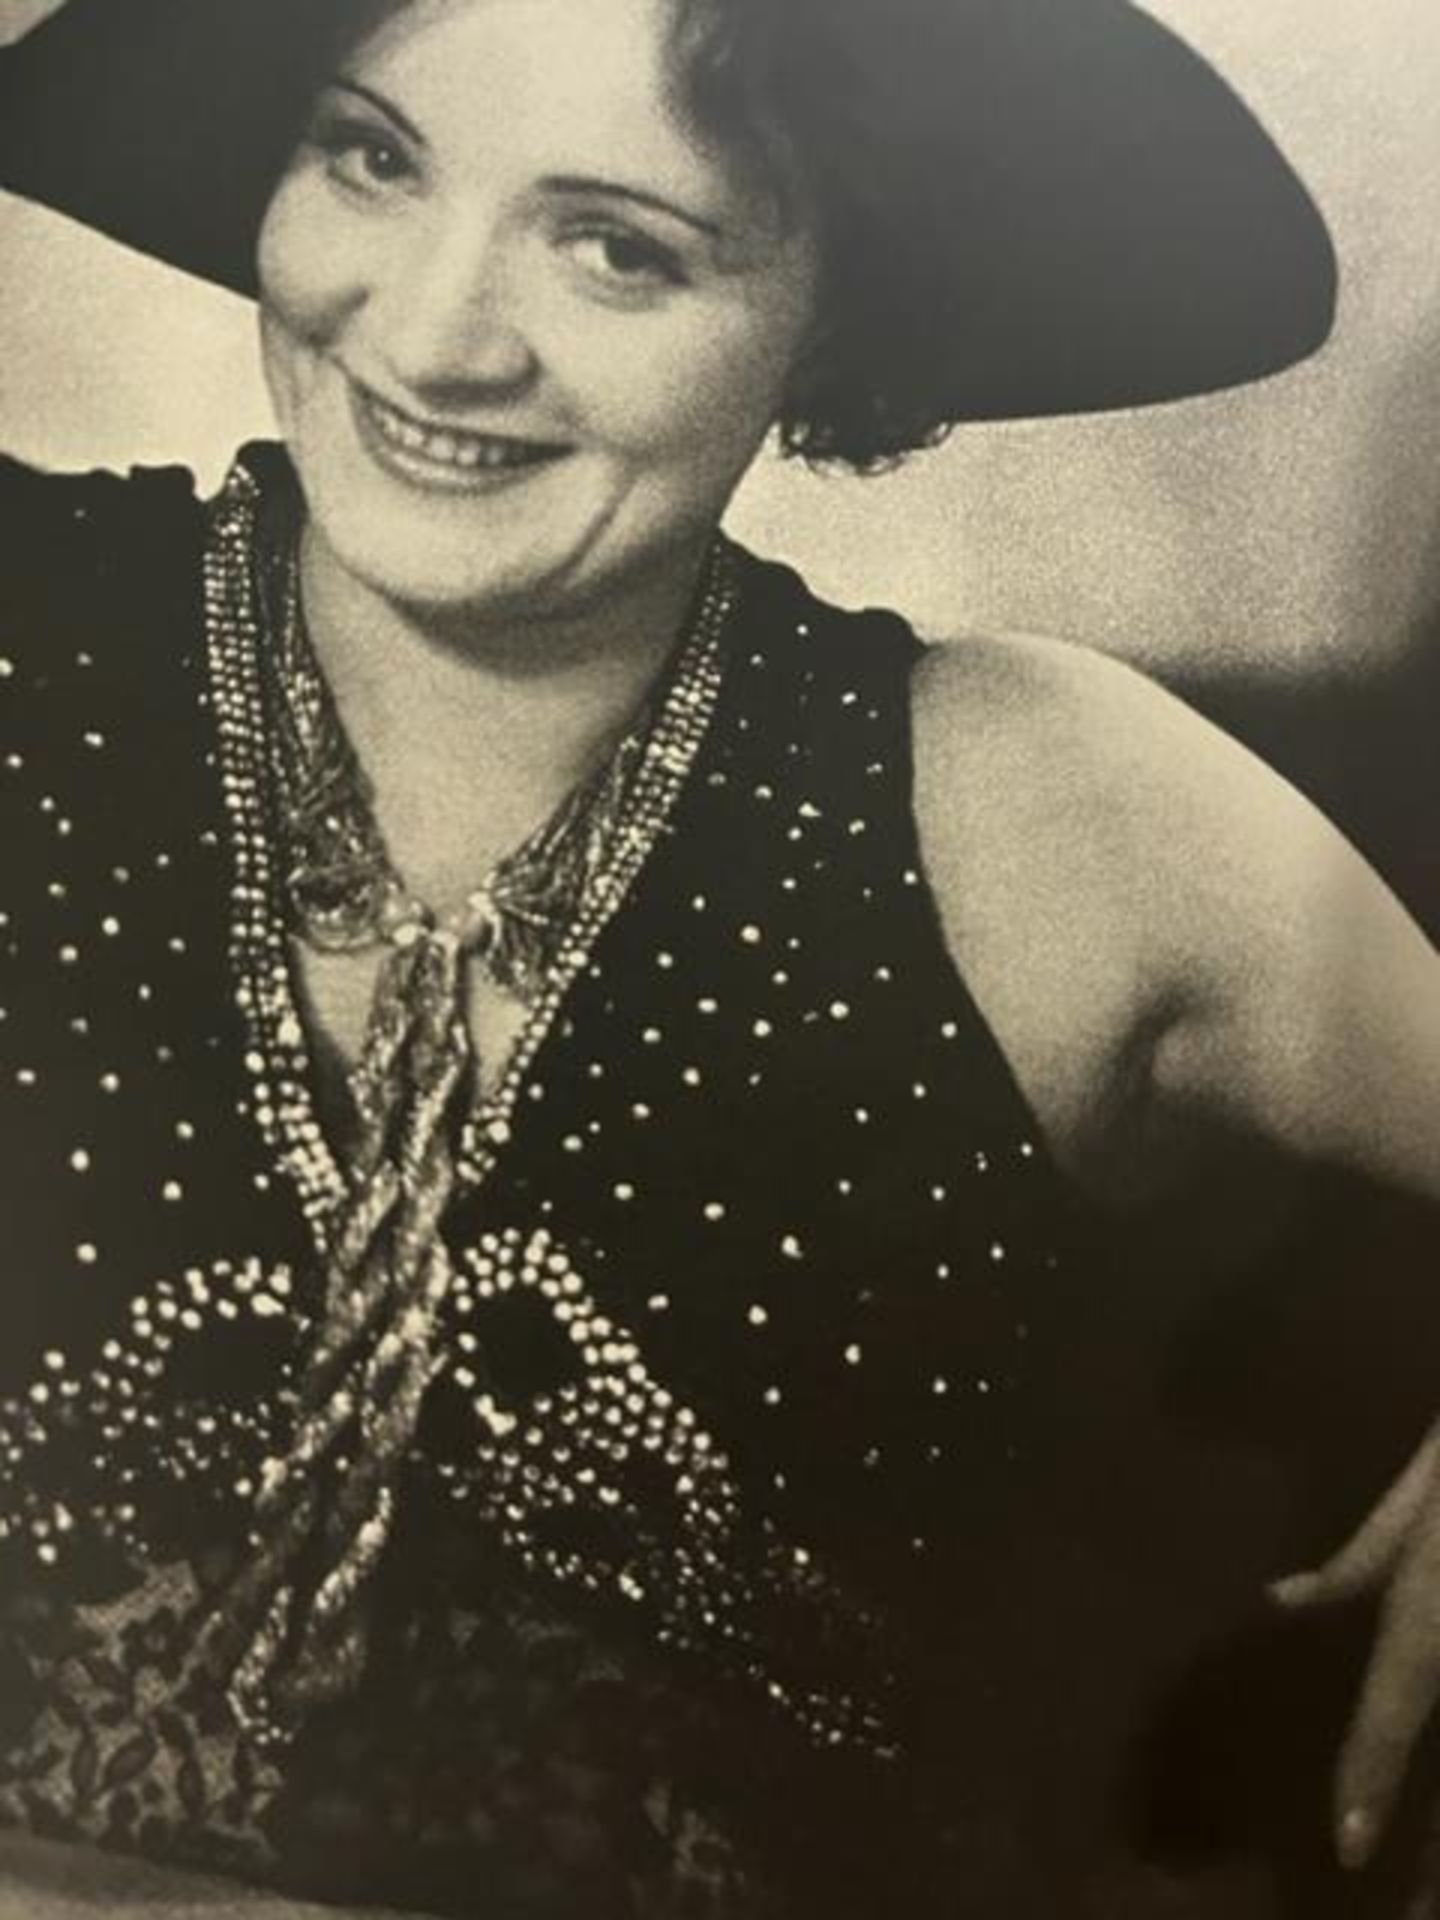 Alfred Eisenstaedt "Marlene Dietrich" Print.